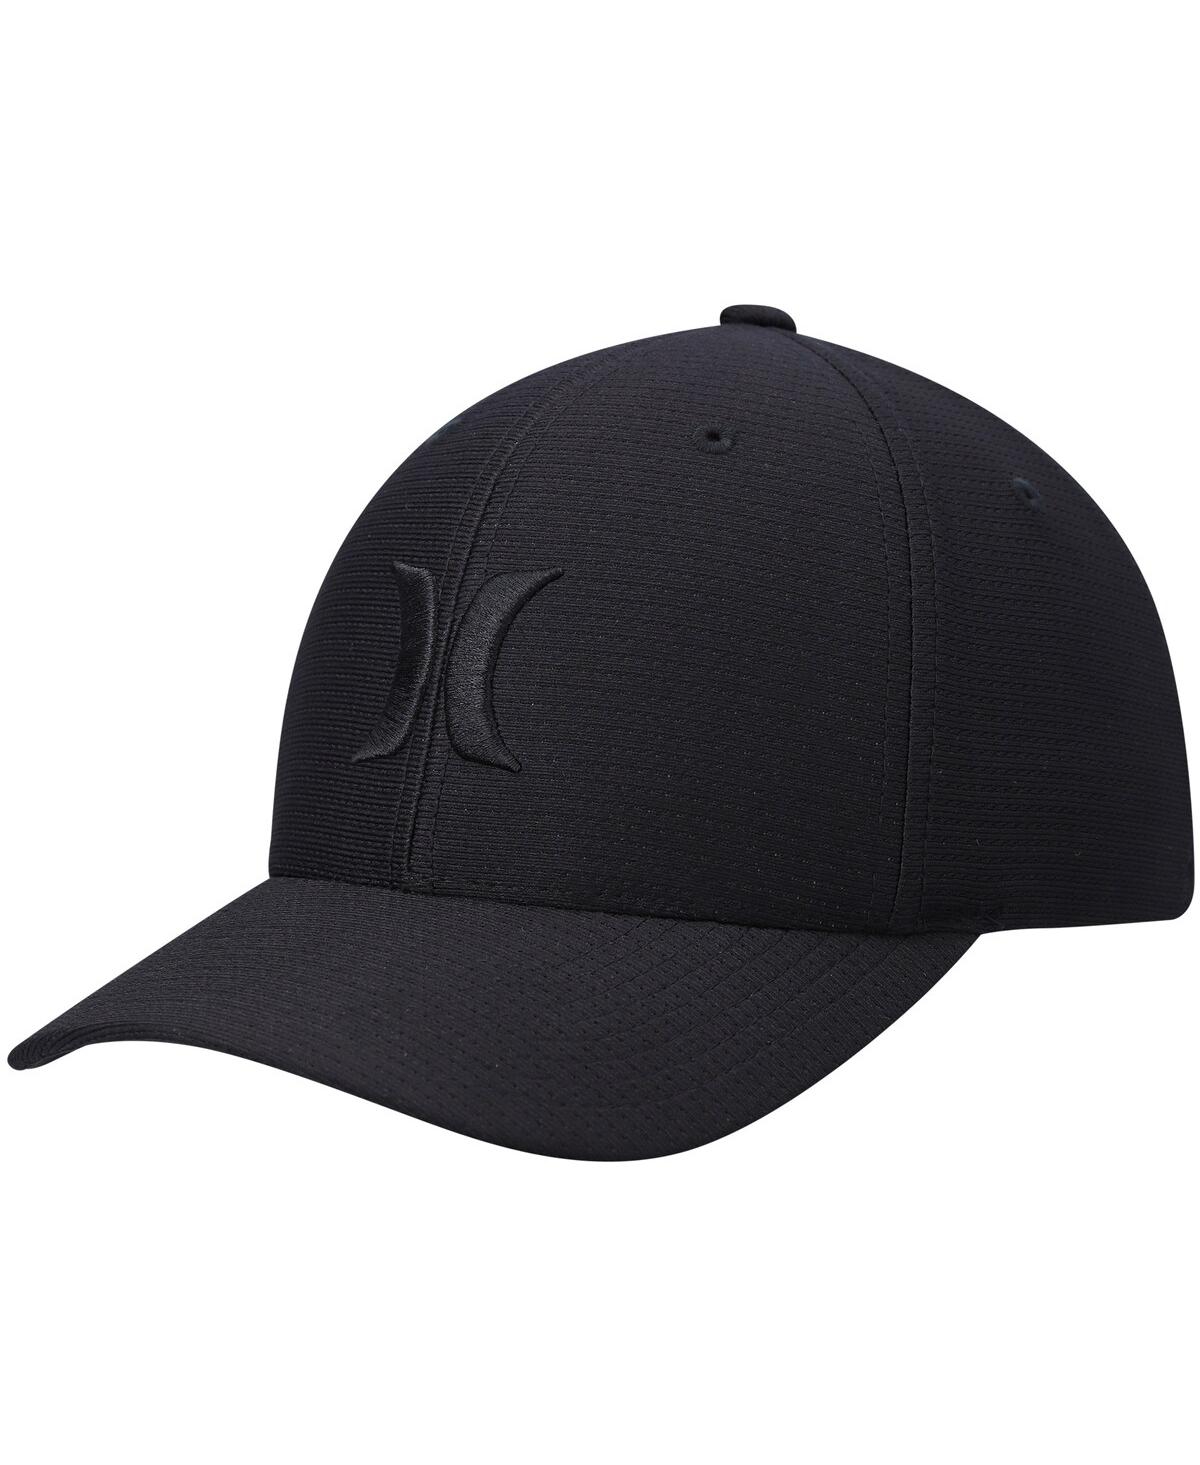 Hurley Men's  Black H2o-dri Pismo Flex Fit Hat